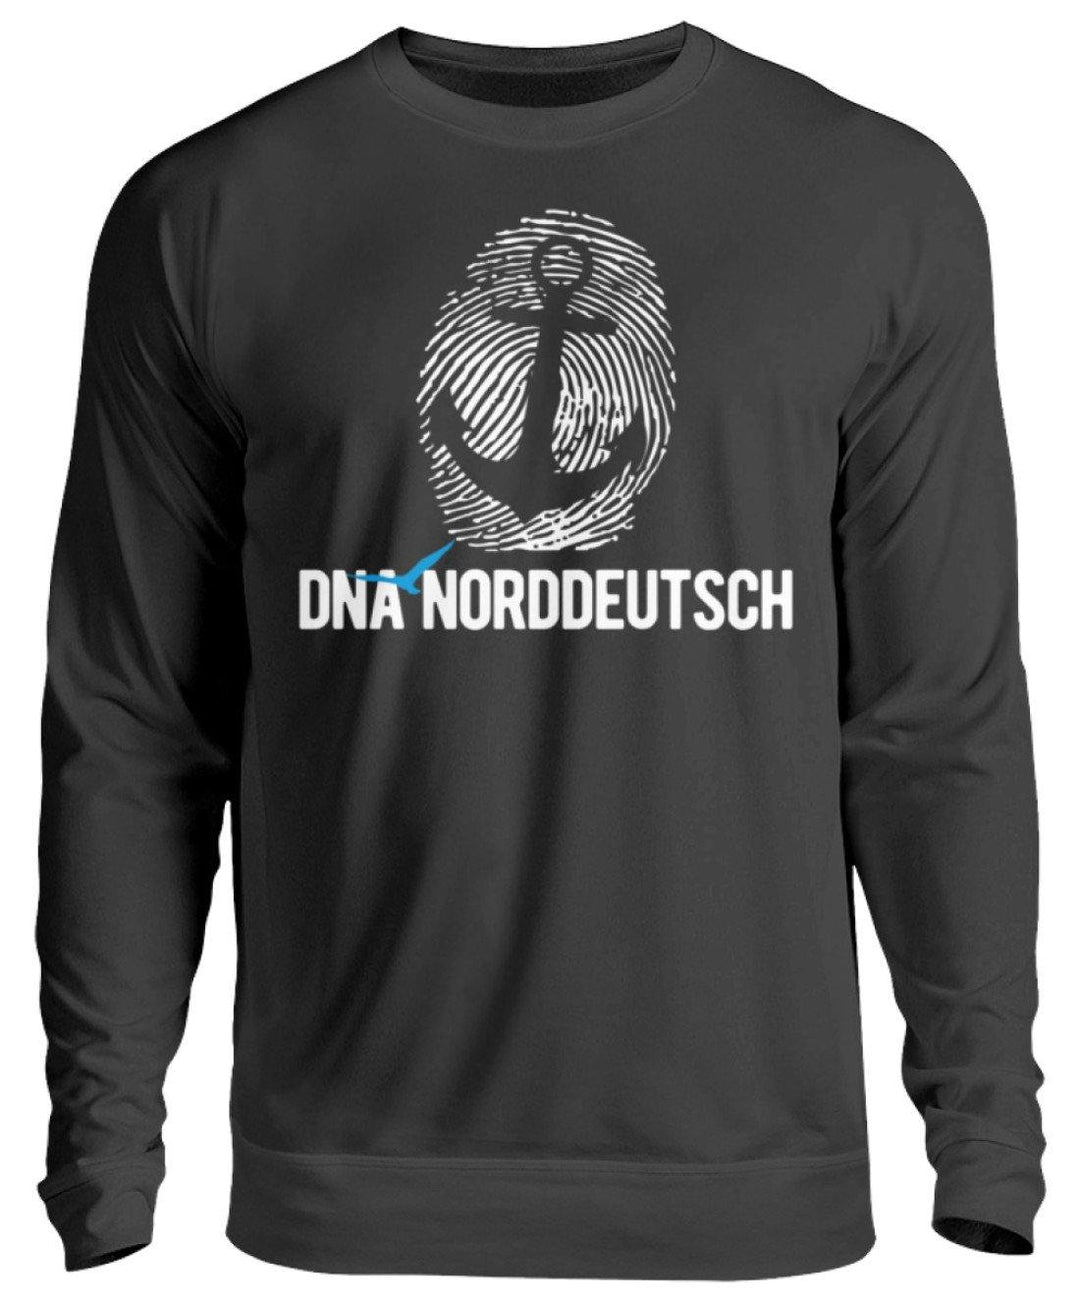 DNA Norddeutsch  - Unisex Pullover - Words on Shirts Sag es mit dem Mittelfinger Shirts Hoodies Sweatshirt Taschen Gymsack Spruch Sprüche Statement